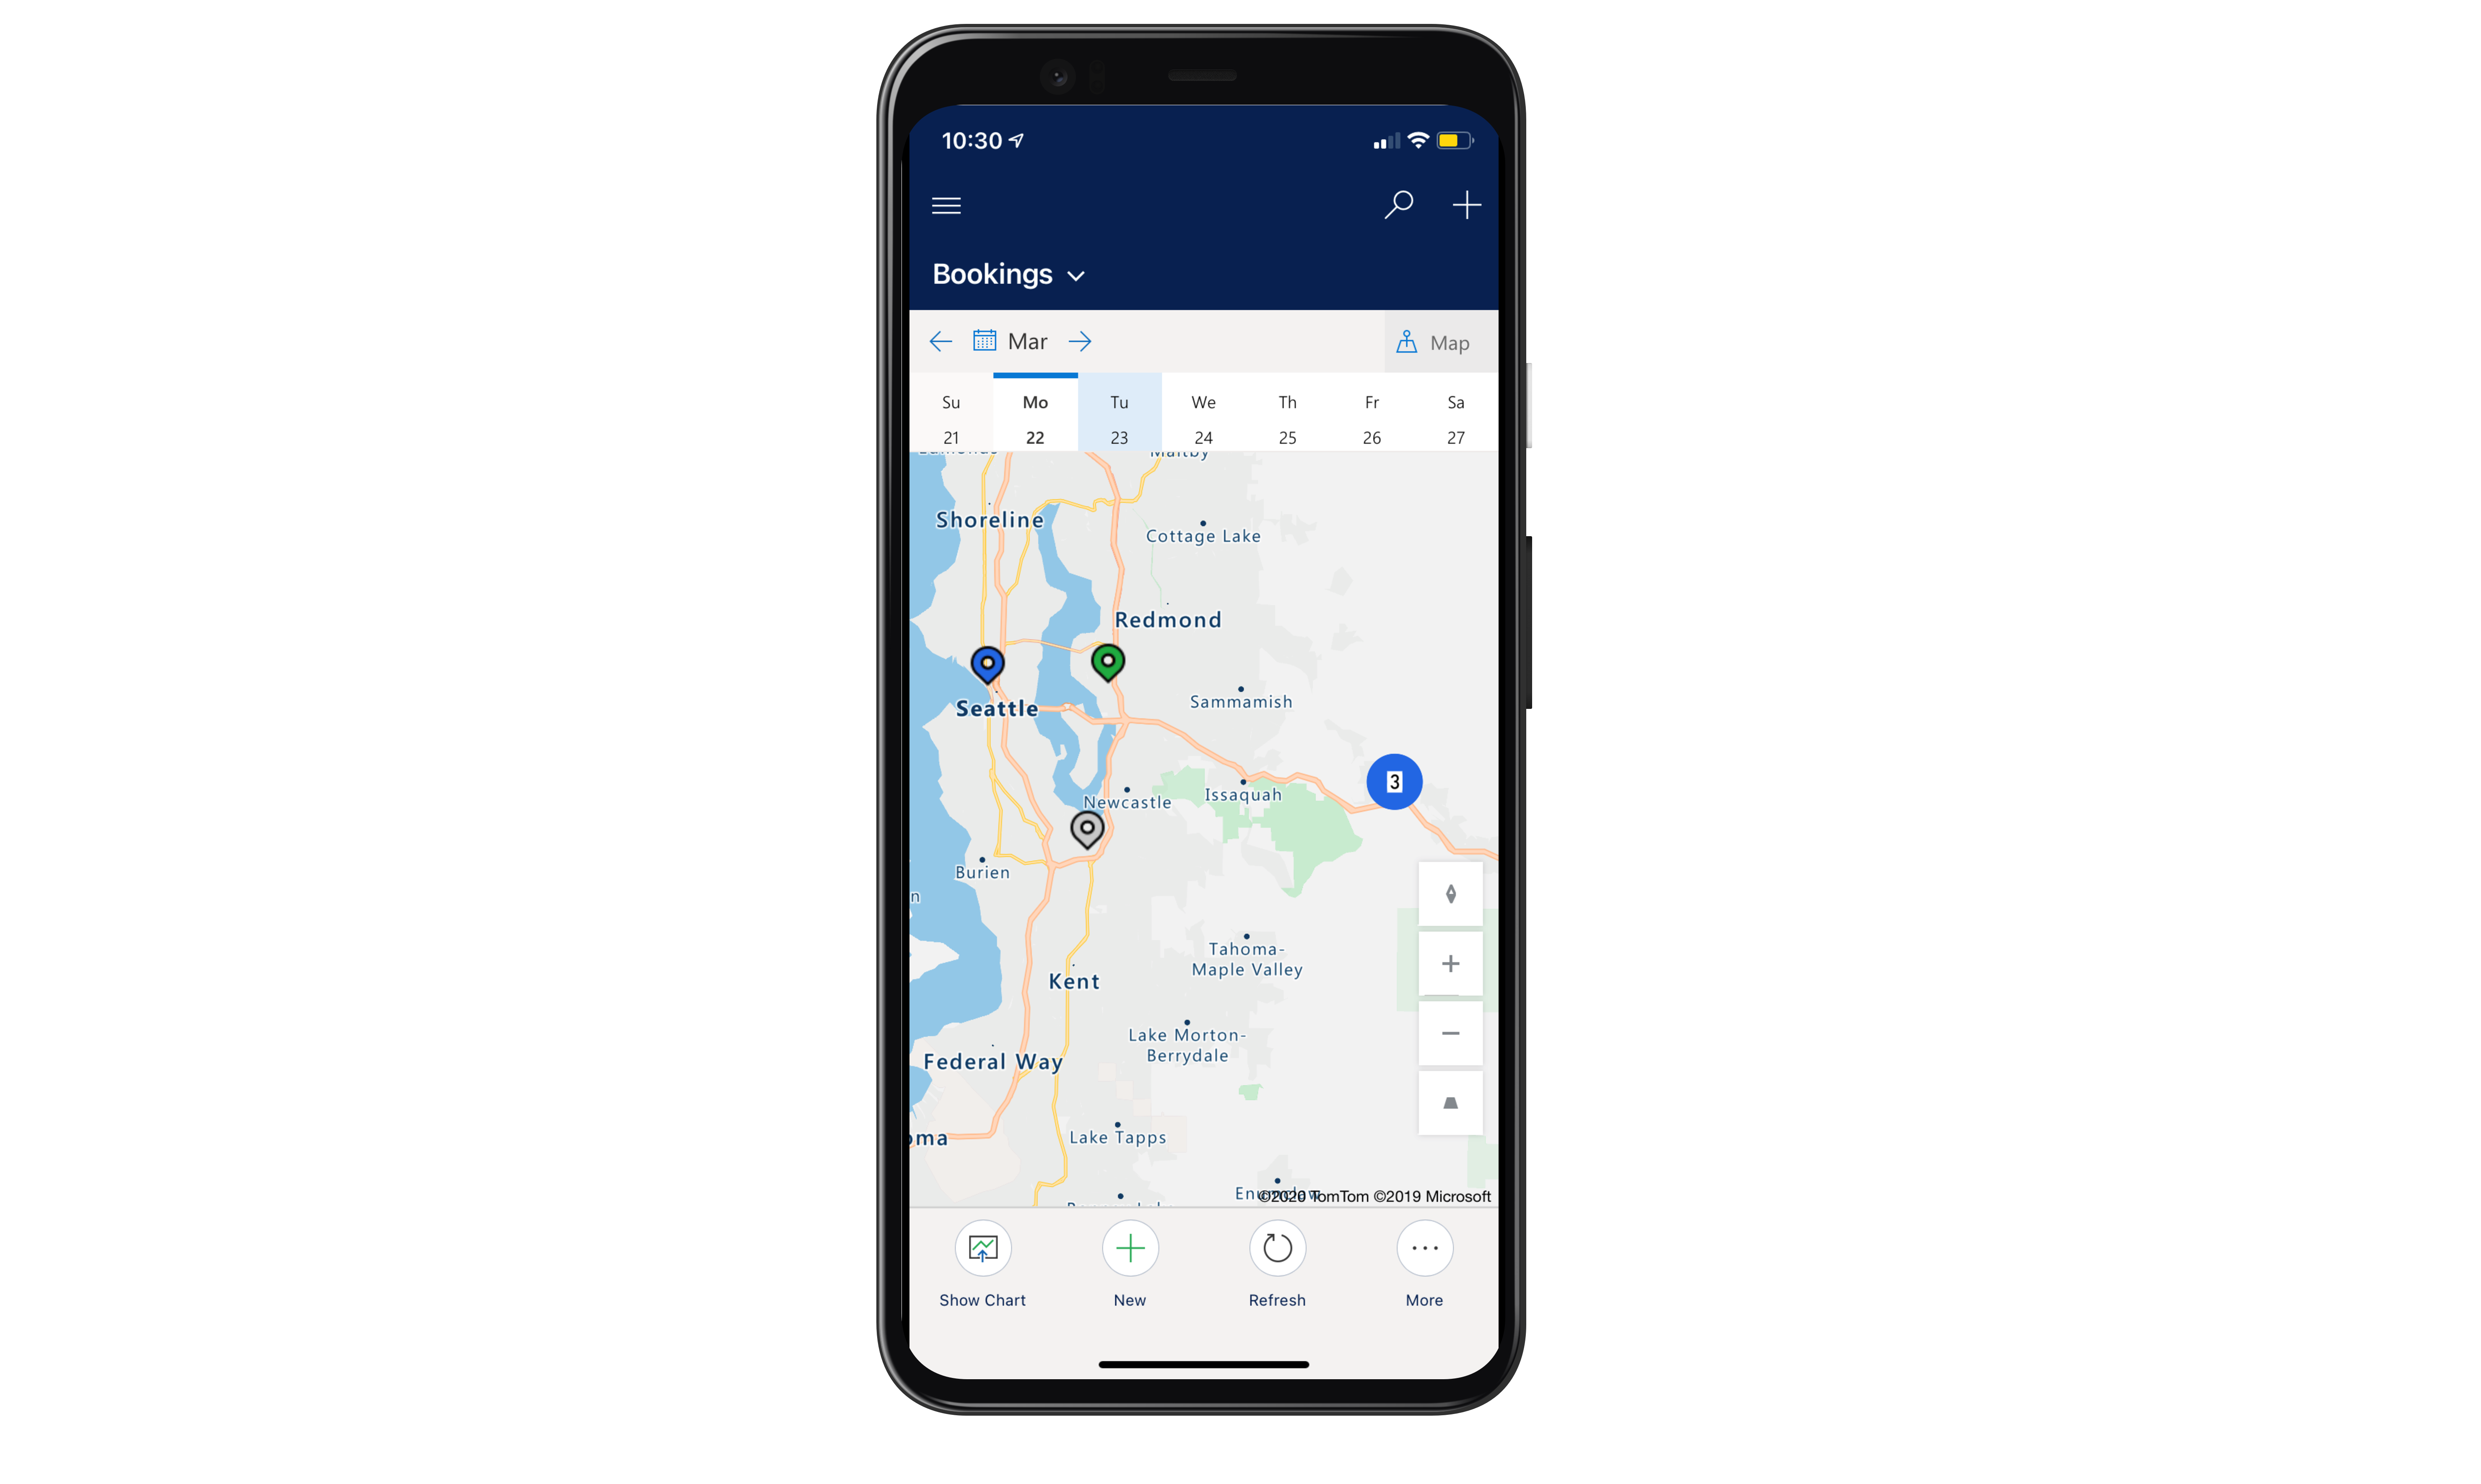 Render urządzenia z aplikacji mobilnej Field Servicei, ukazujący widok mapy z wybranym jednym dniem tygodnia.